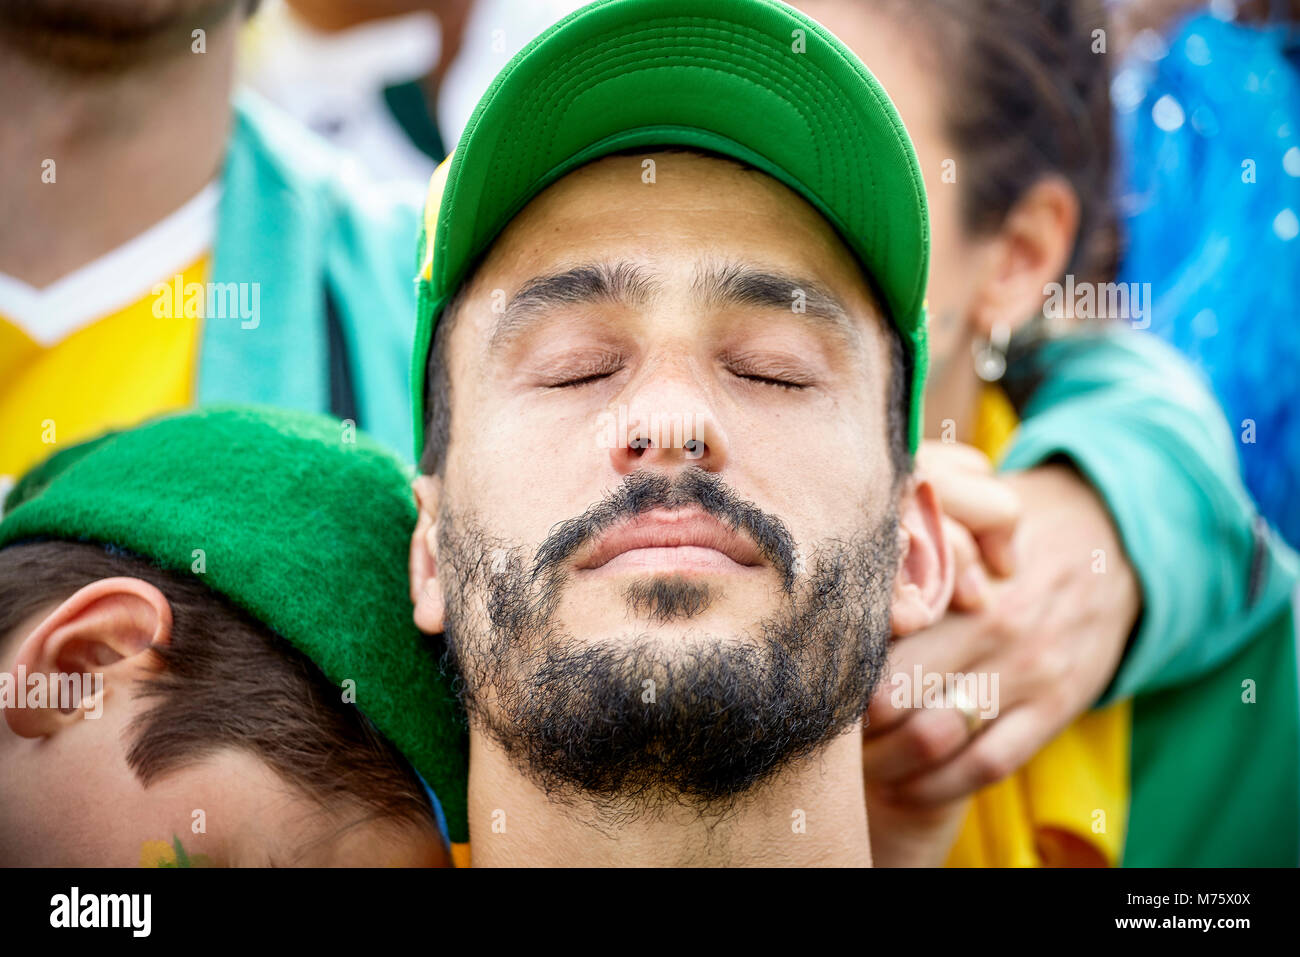 Fan de fútbol con la cabeza hacia atrás y los ojos cerrados en decepción Foto de stock